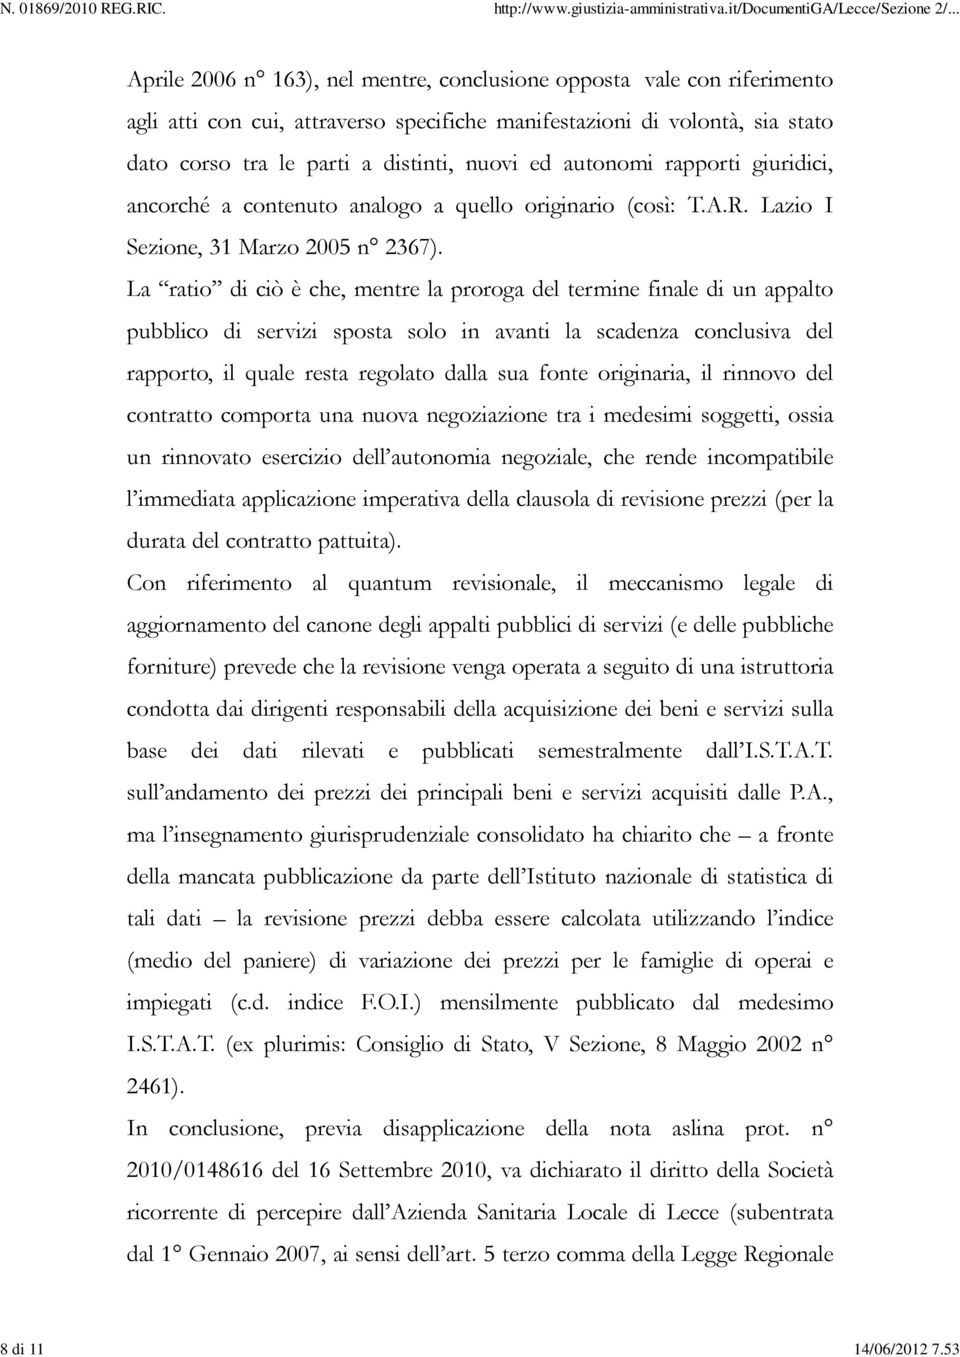 autonomi rapporti giuridici, ancorché a contenuto analogo a quello originario (così: T.A.R. Lazio I Sezione, 31 Marzo 2005 n 2367).